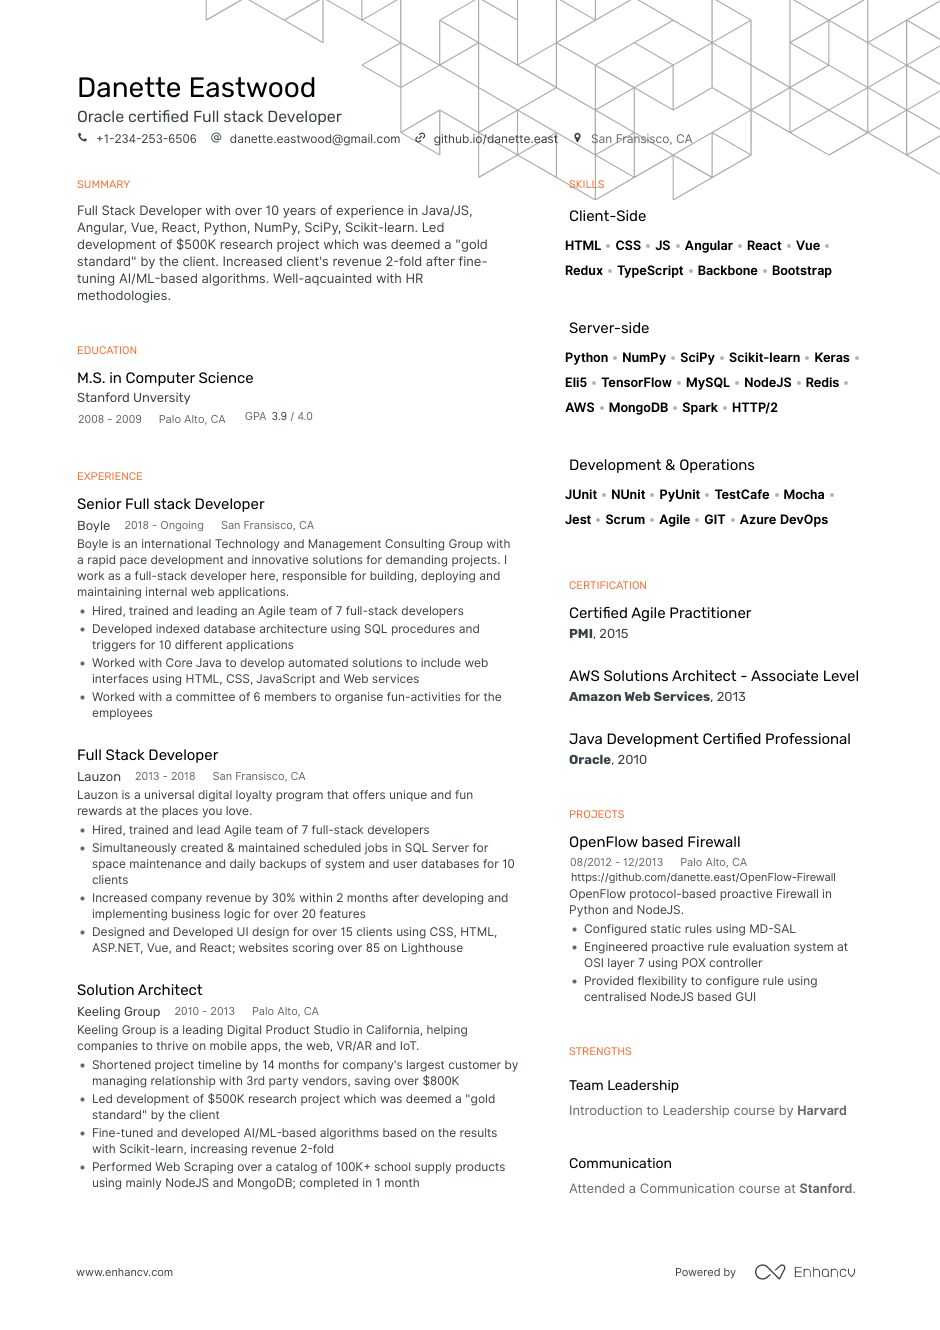 Full Stack Web Developer Resume Sample Full Stack Developer Resume Examples & Writing Guide for 2021